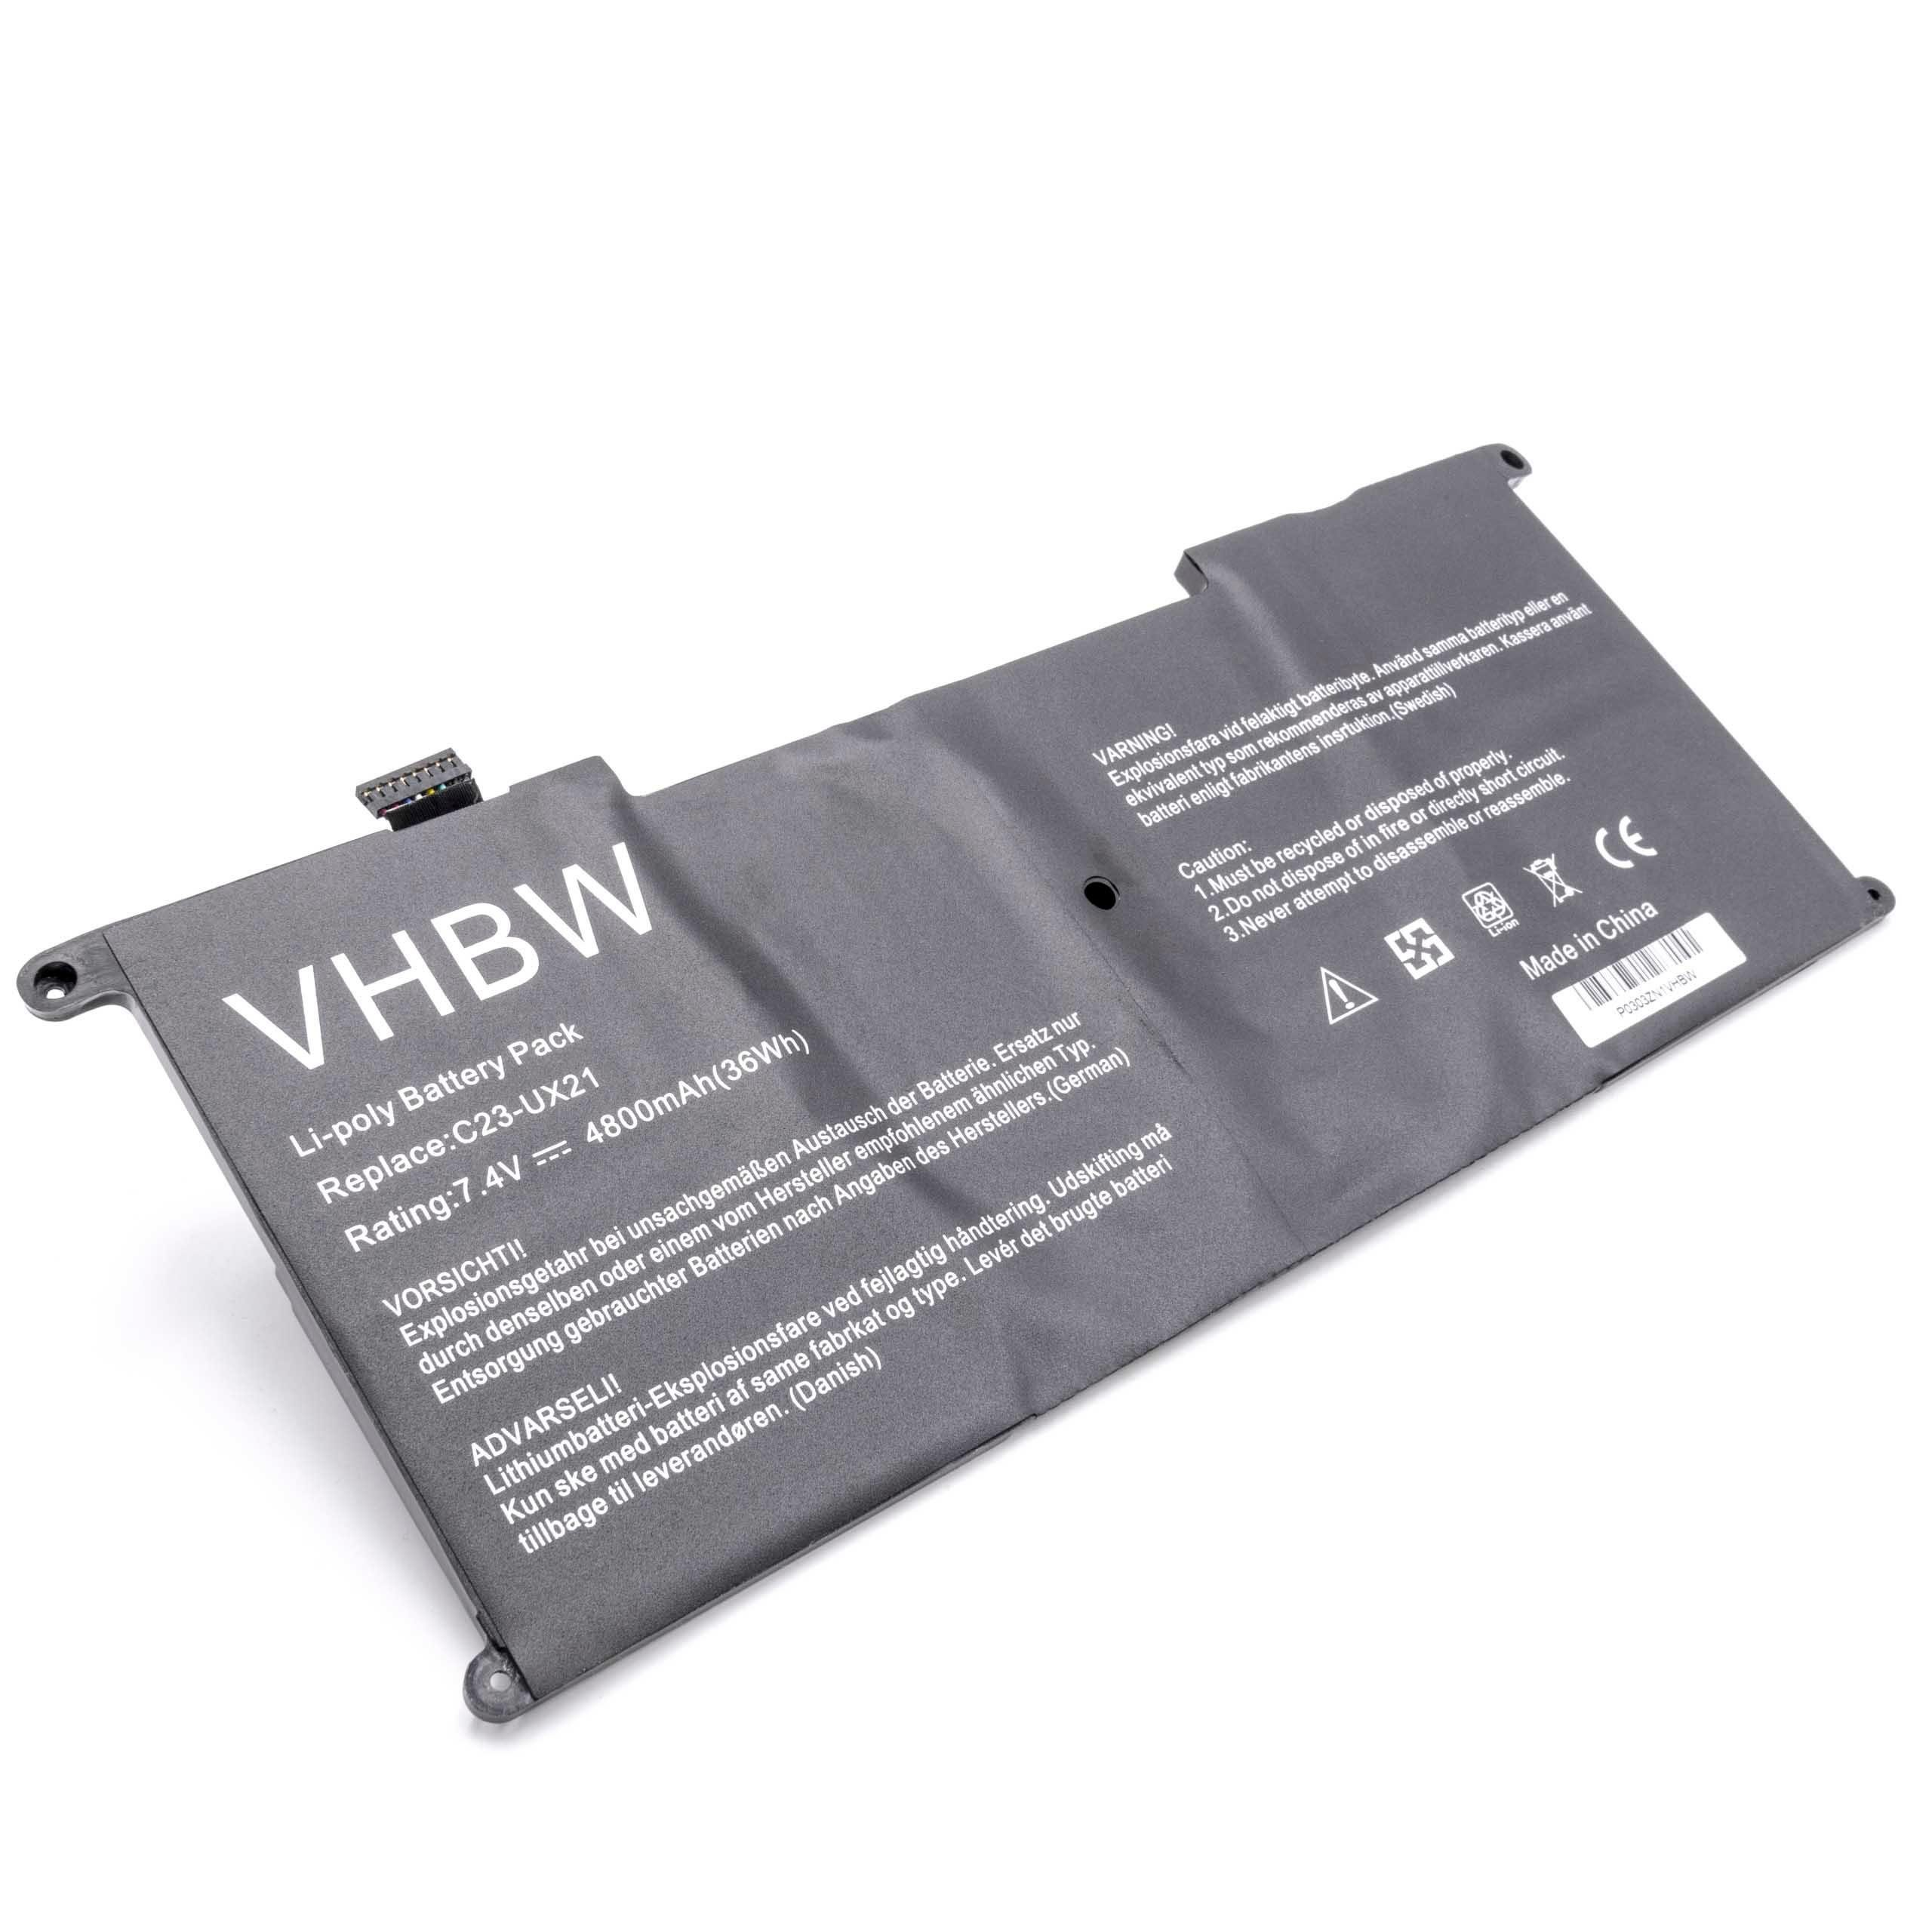 vhbw passend für Asus ZenBook UX21E-KX009V, UX21E-KX010V, UX21E-KX011V, Laptop-Akku 4800 mAh